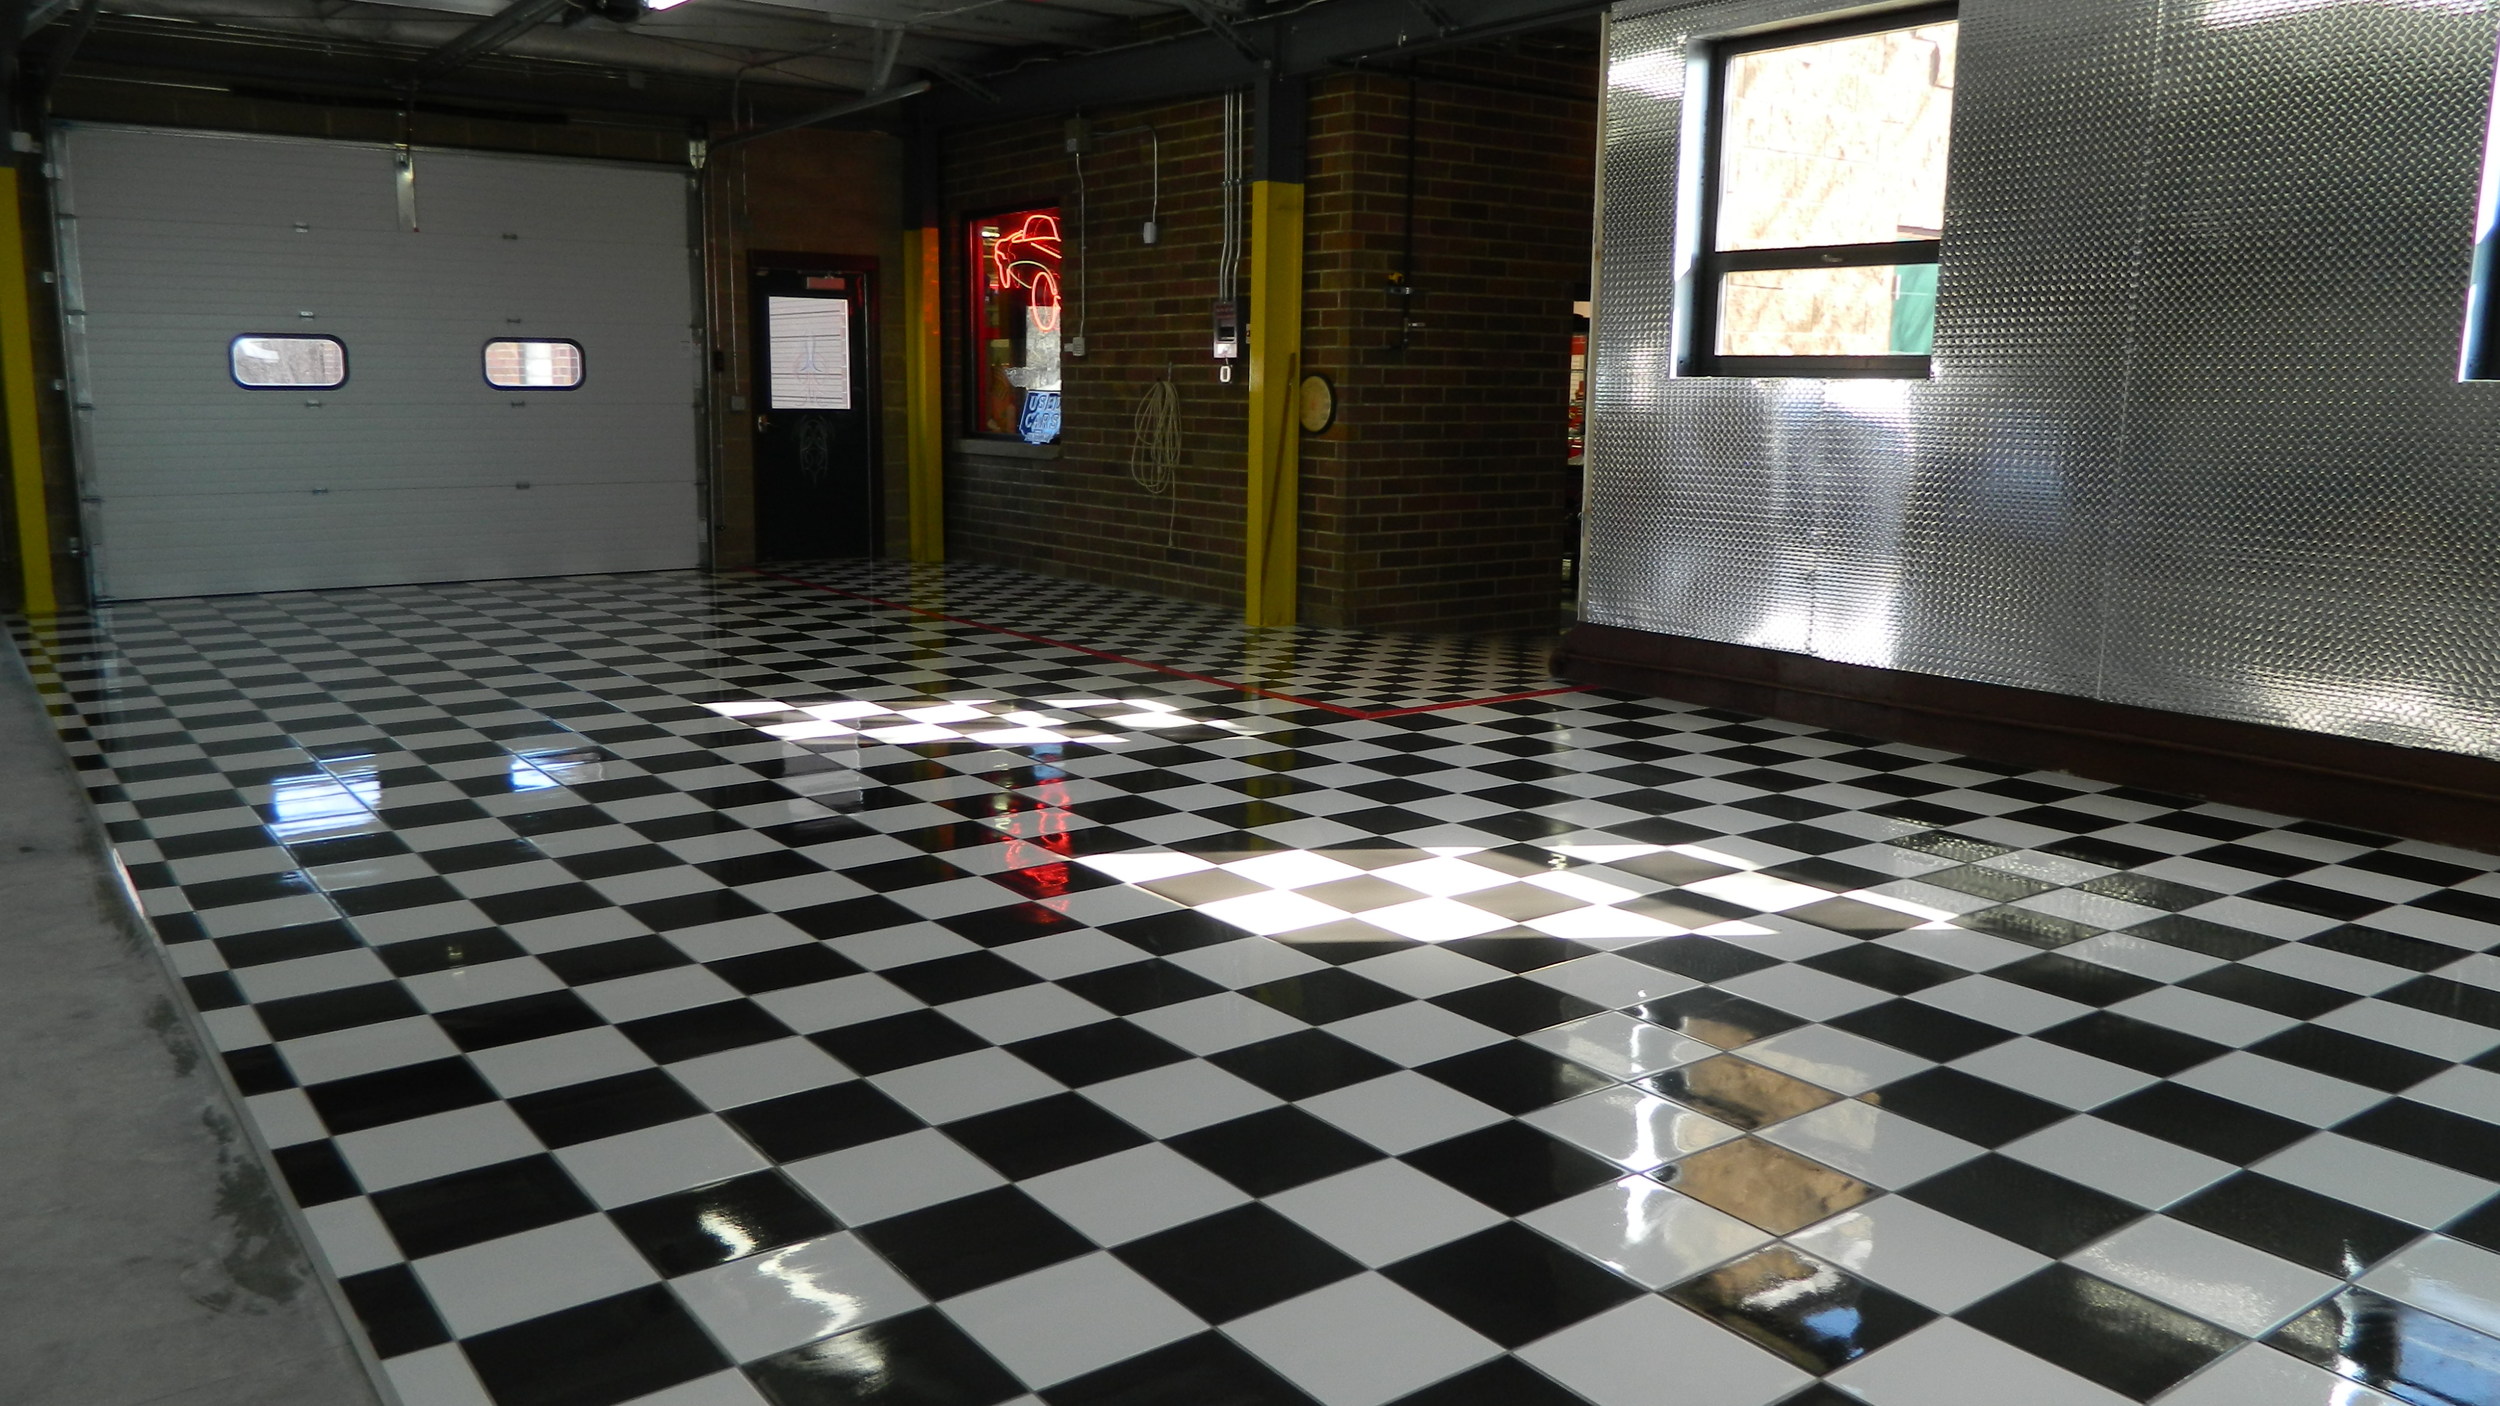 Checkered Tile Floor